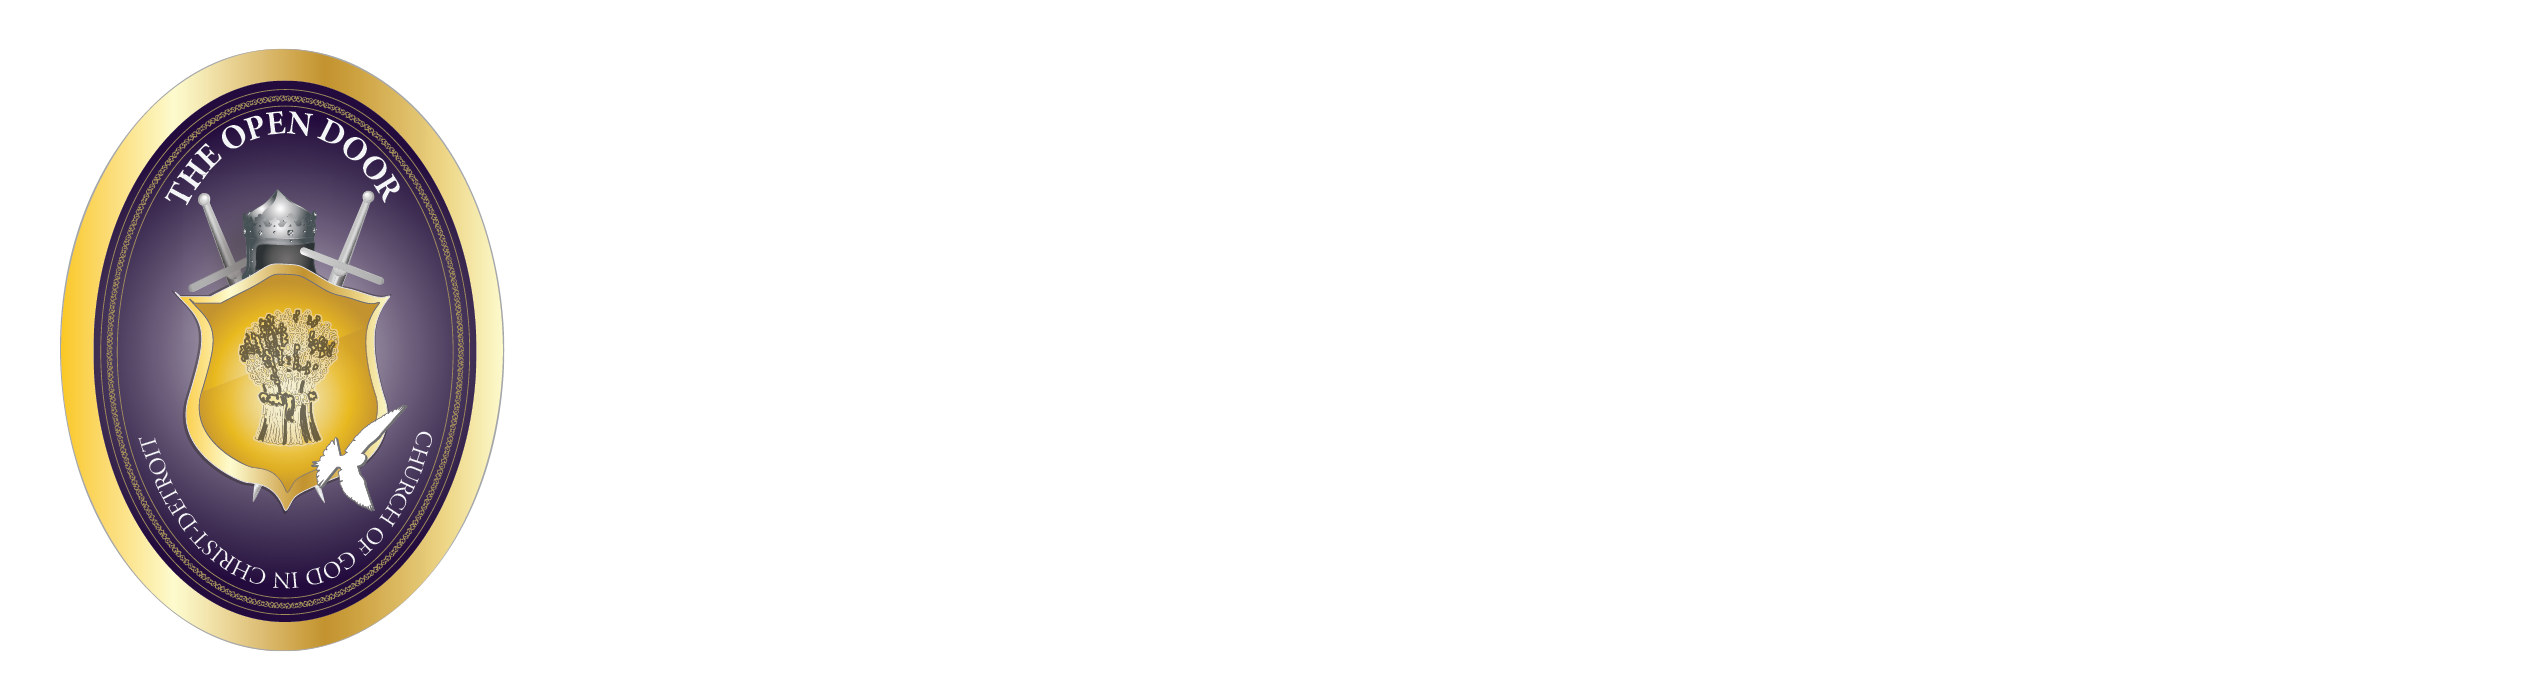 The Open Door Church of God In Christ Detroit